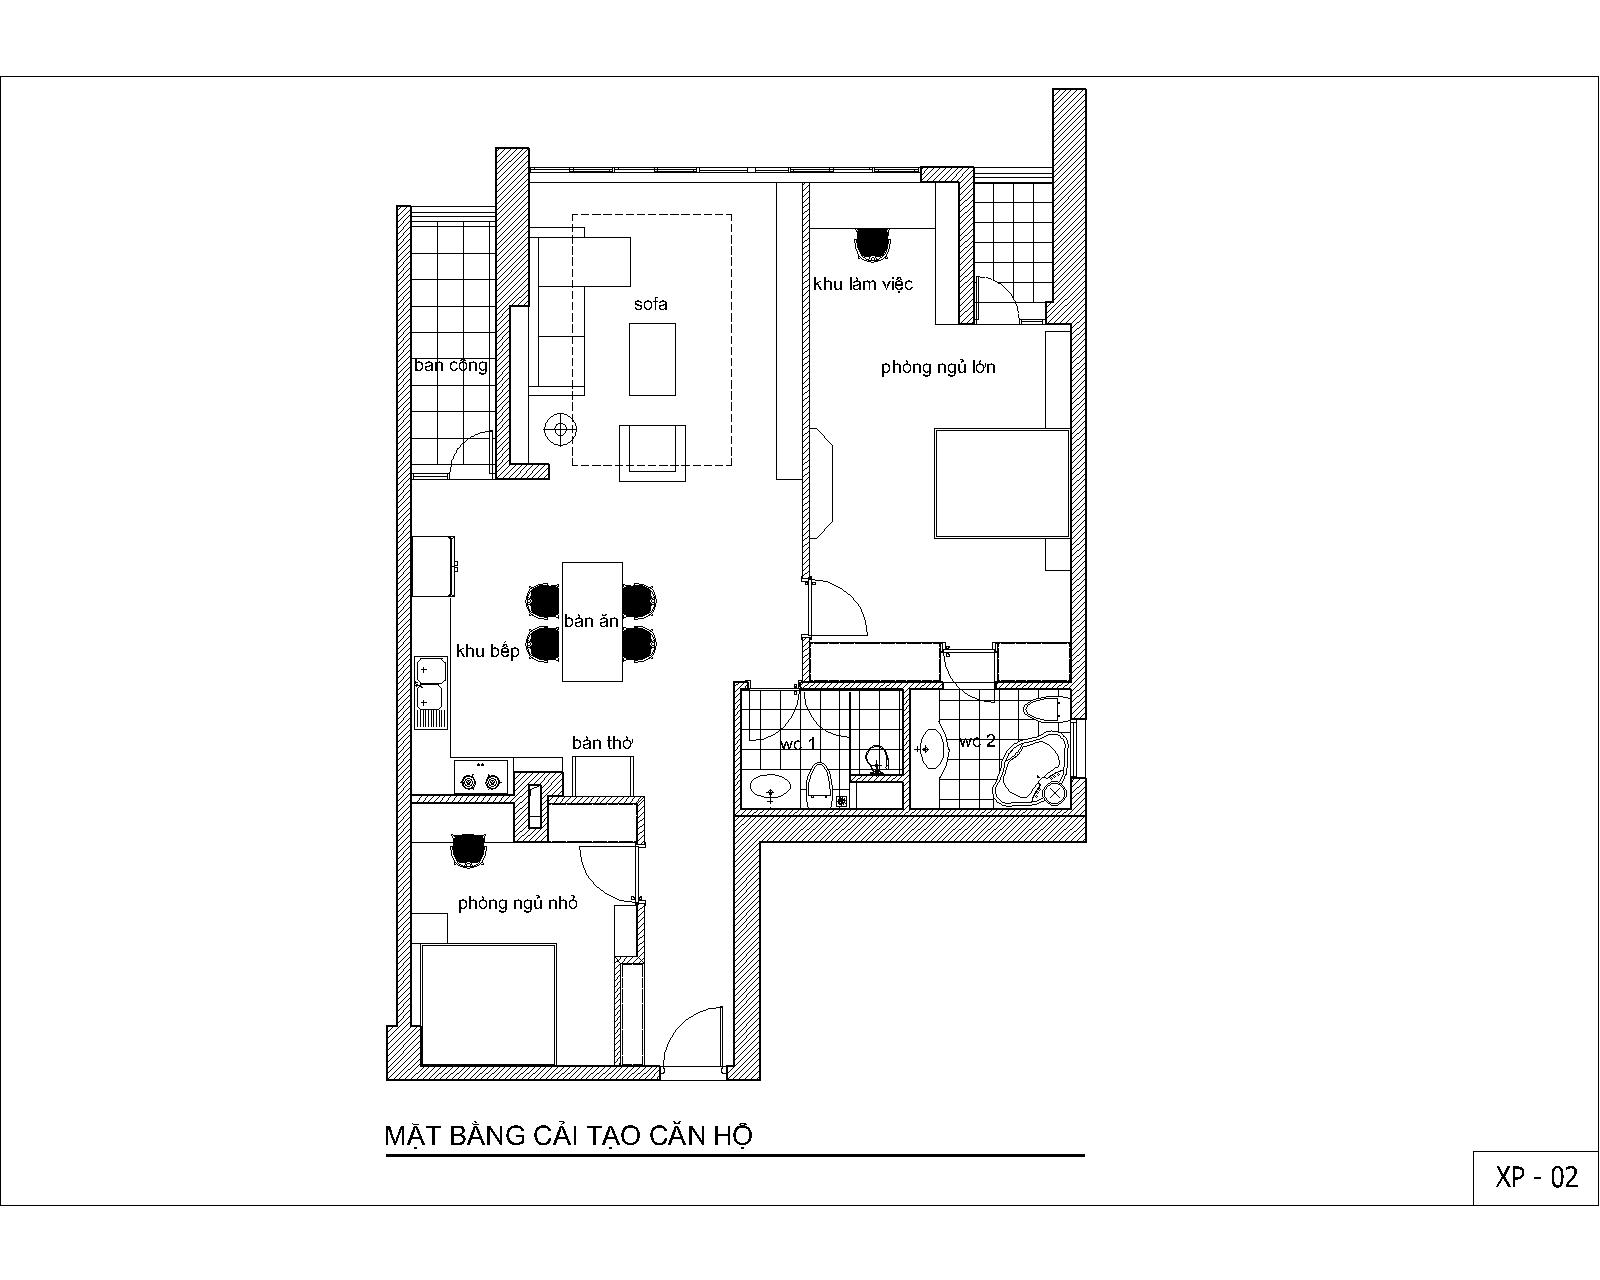 Nội thất căn hộ số 03 - Chung cư FLC - Landmark Tower - Mặt bằng cải tạo, phòng ngủ lớn và bếp là các thay đổi lớn